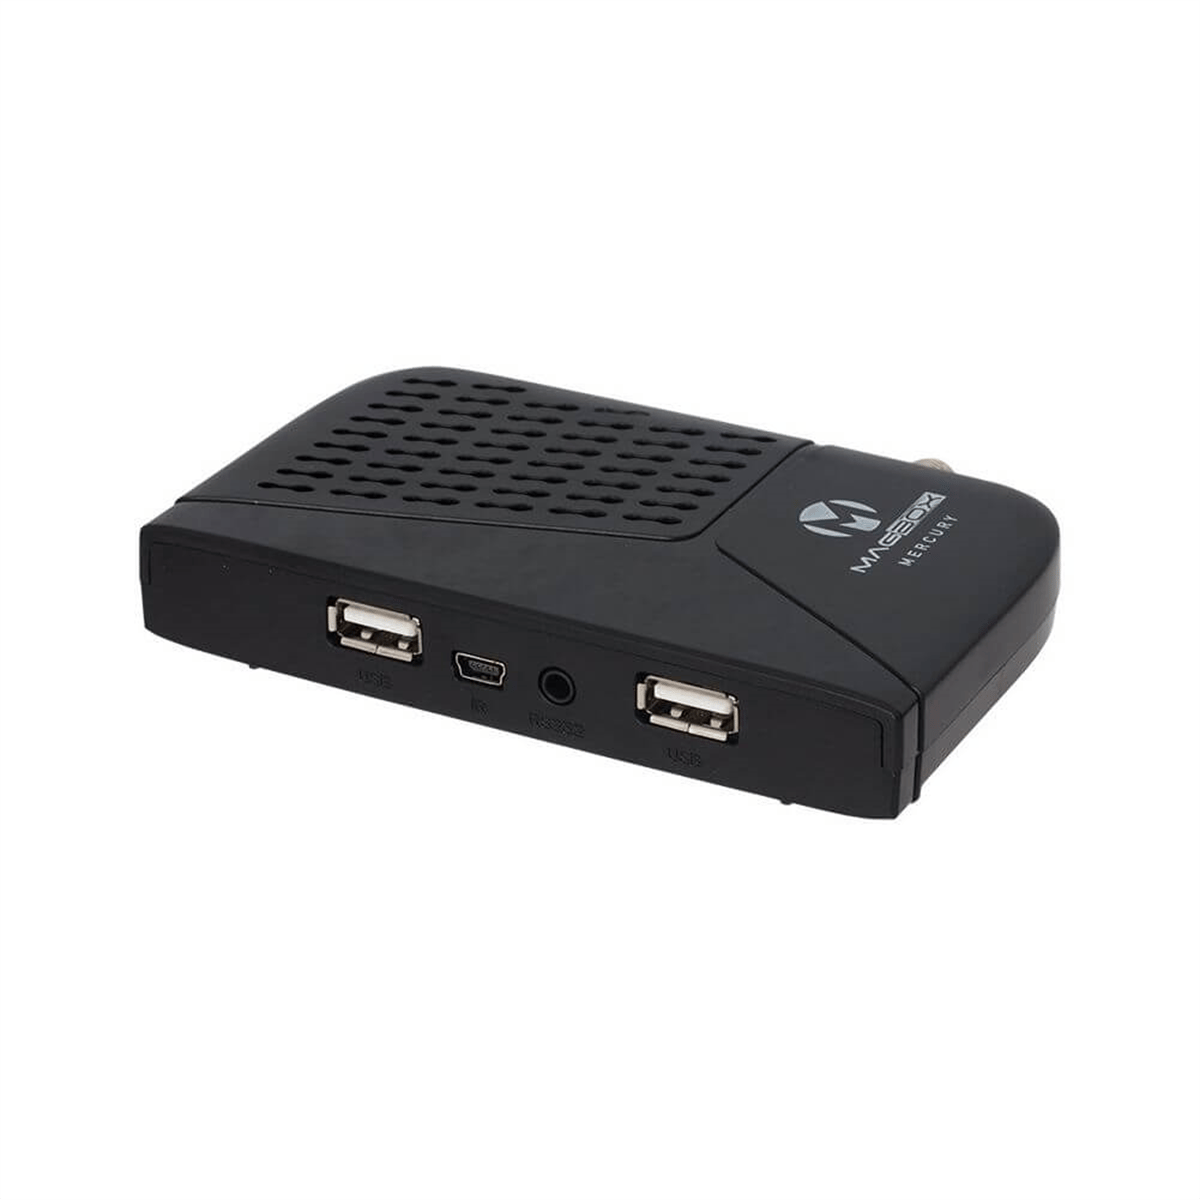 Magbox Mercury Full HD Çift USB li TKGS li Mini Uydu Alıcısı